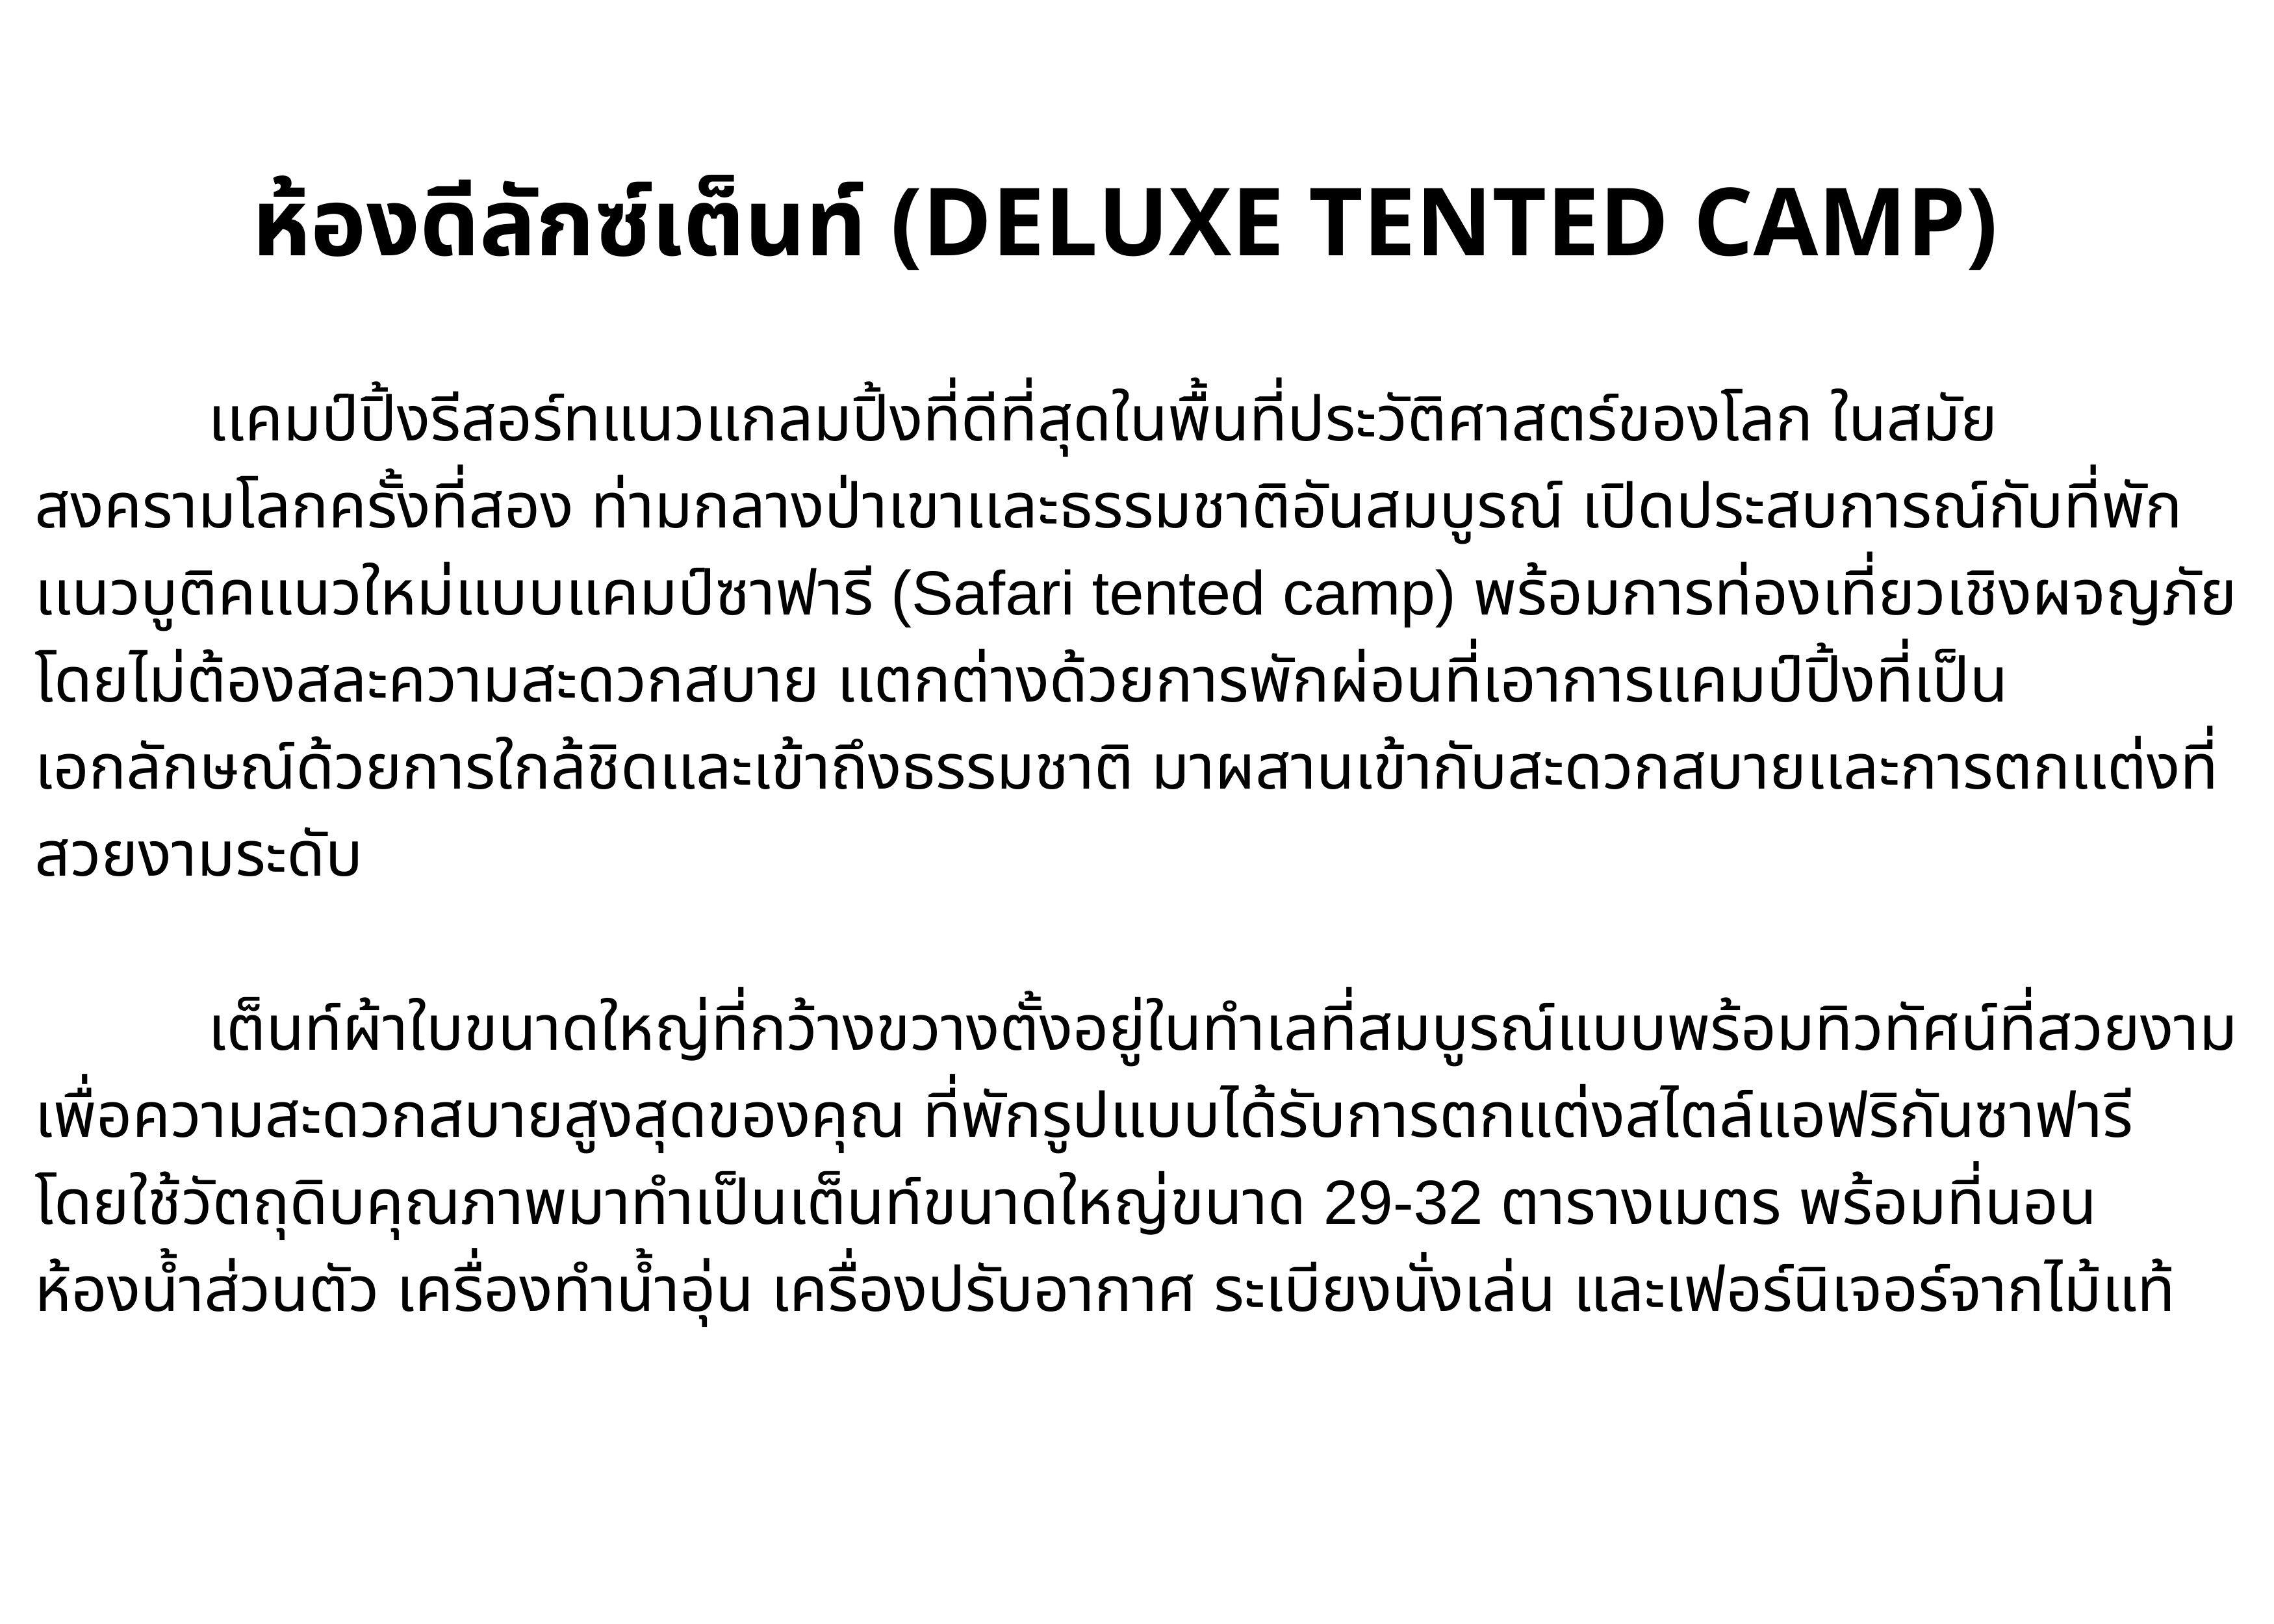 เกี่ยวกับสินค้า [E-vo] Hintok River Camp, กาญจนบุรี - เข้าพักได้ถึง 31 ต.ค. 66 ห้อง Deluxe Tented Camp 1 คืน พร้อมอาหารเช้าและเย็น 2 ท่าน